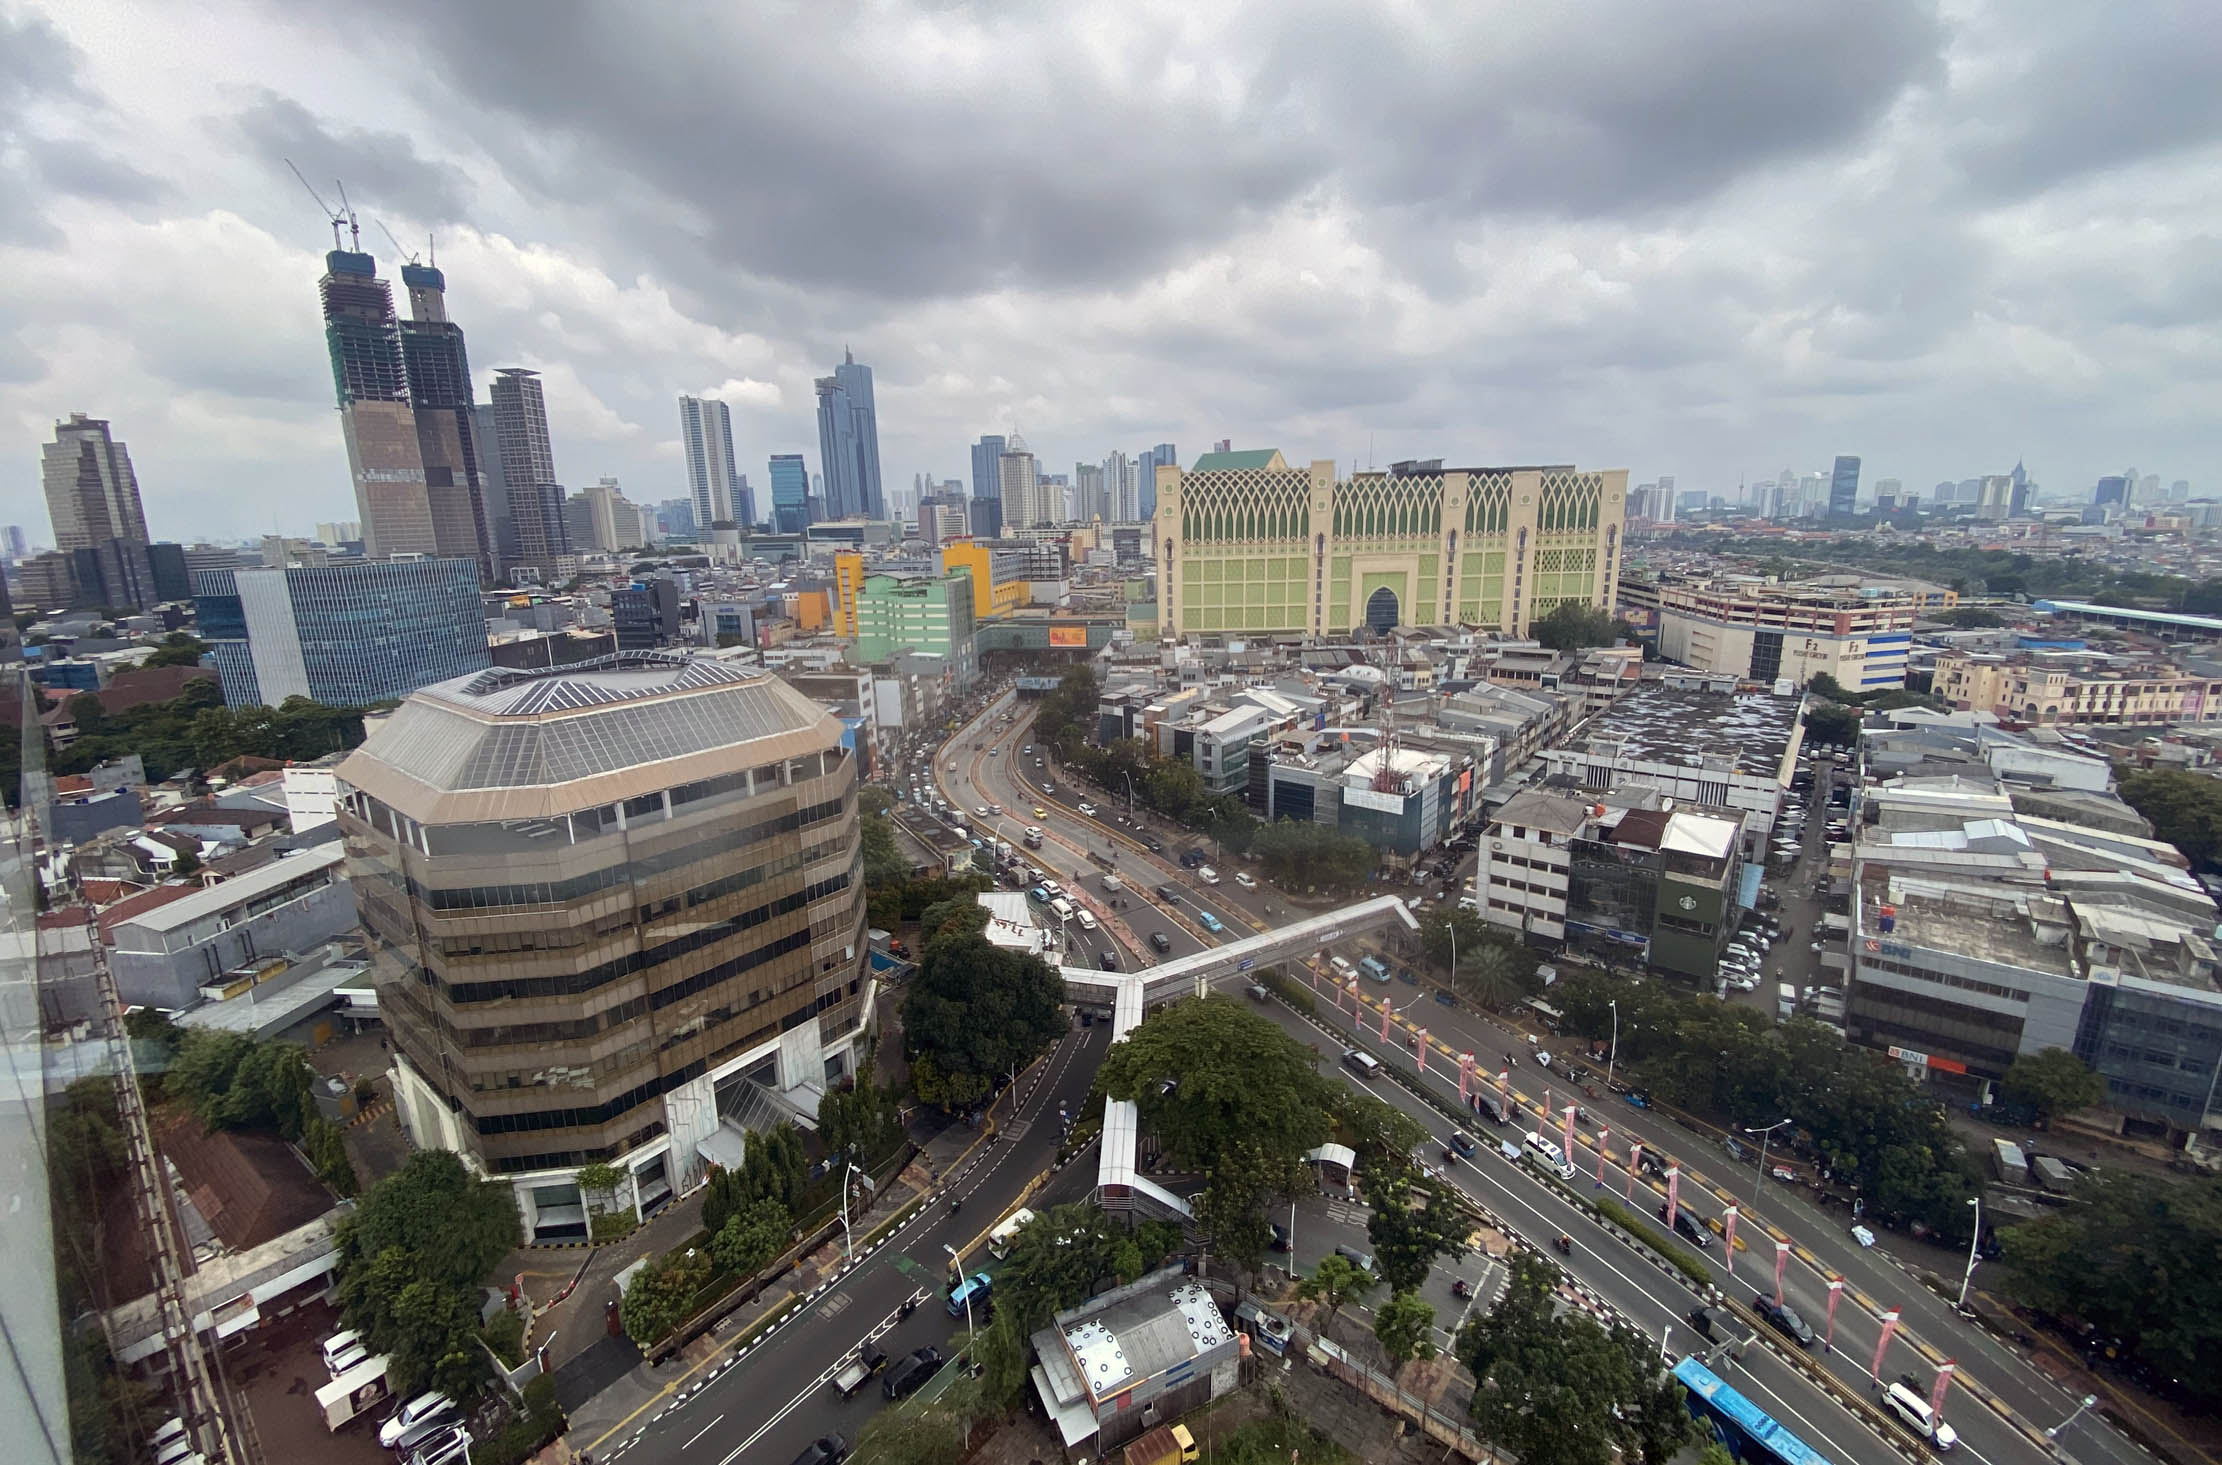 Pemandangan kepadatan Kota Jakarta yg kian hari semakin bertambah dengan pembangunan gedung-gedung dan bangunan baru baik hunian maupun kawasan bisnis, Kamis 2 Februari 2023. Foto : Panji Asmoro/TrenAsia